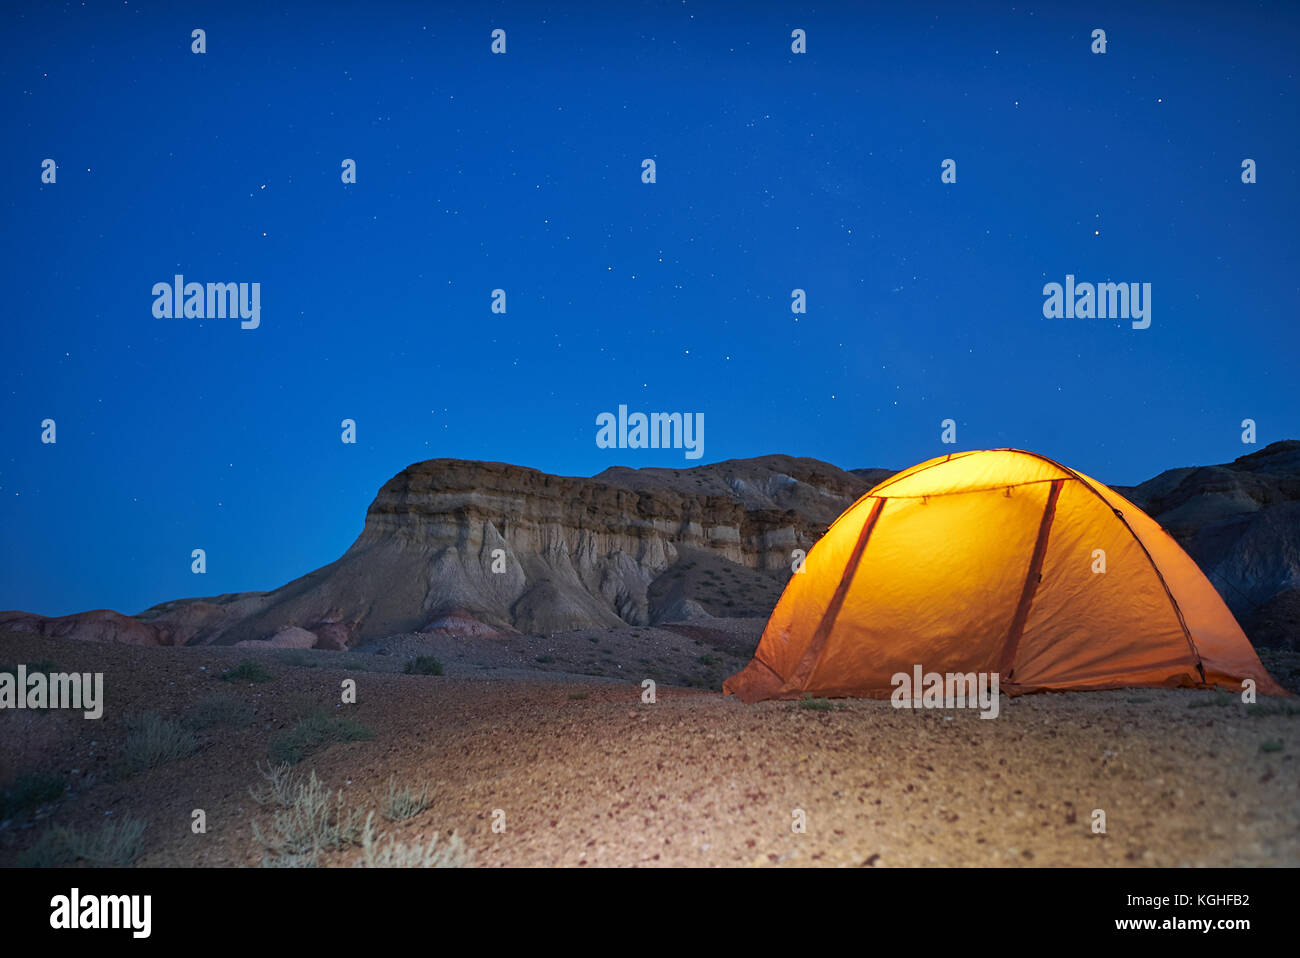 Soirée solitaire en camping dans les canyons de Mongolie. jaune allumé tente est situé près de canyons Banque D'Images